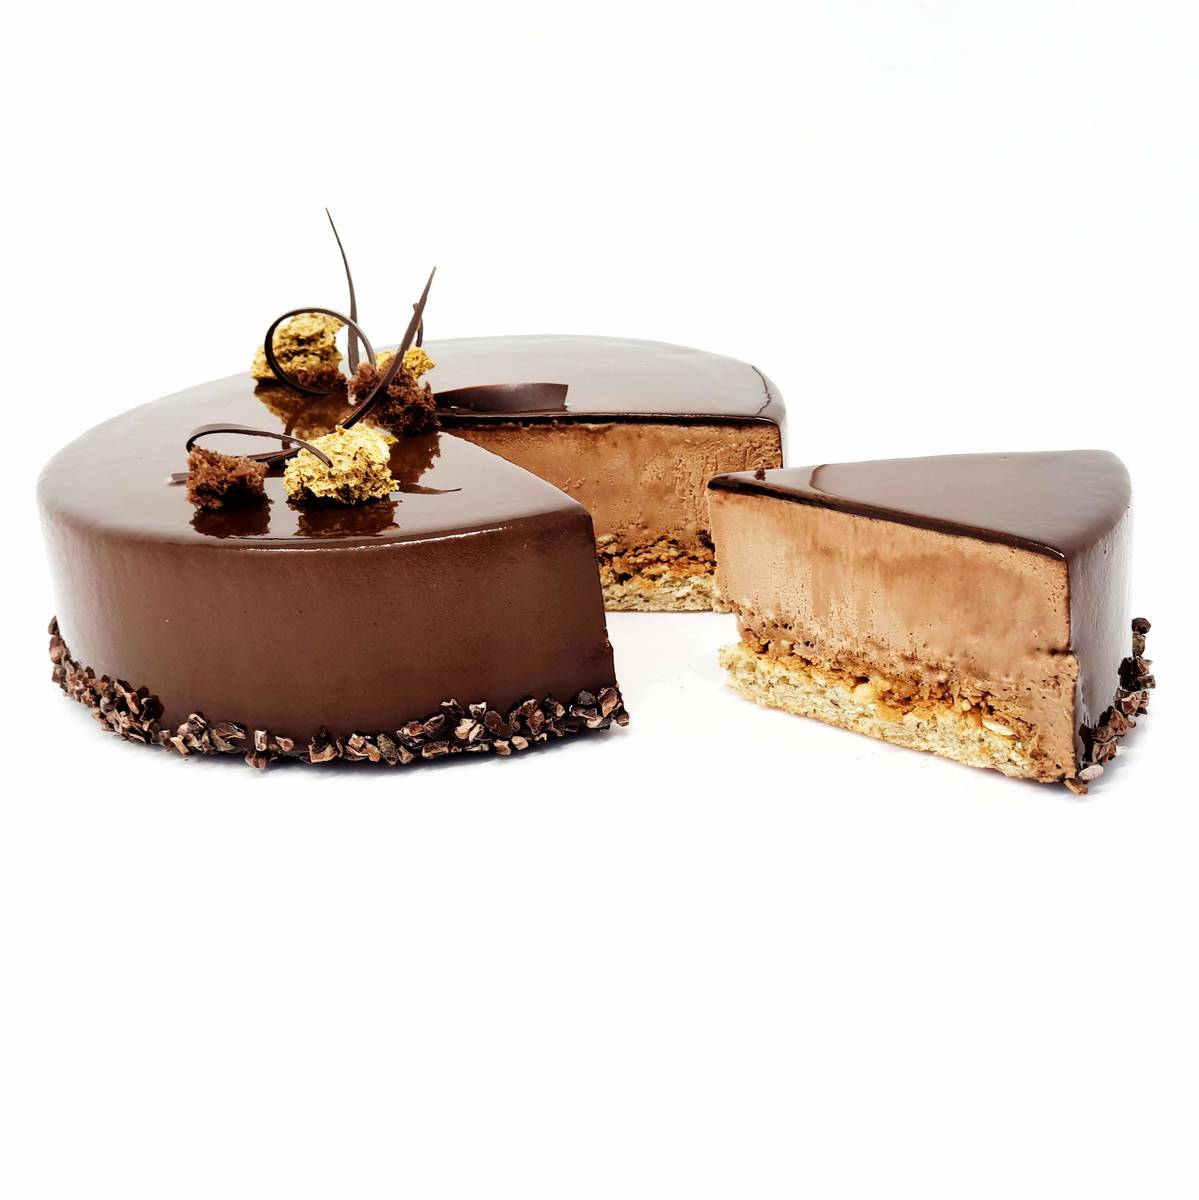 Recette Trianon et glaçage miroir chocolat noir sur Chefclub daily